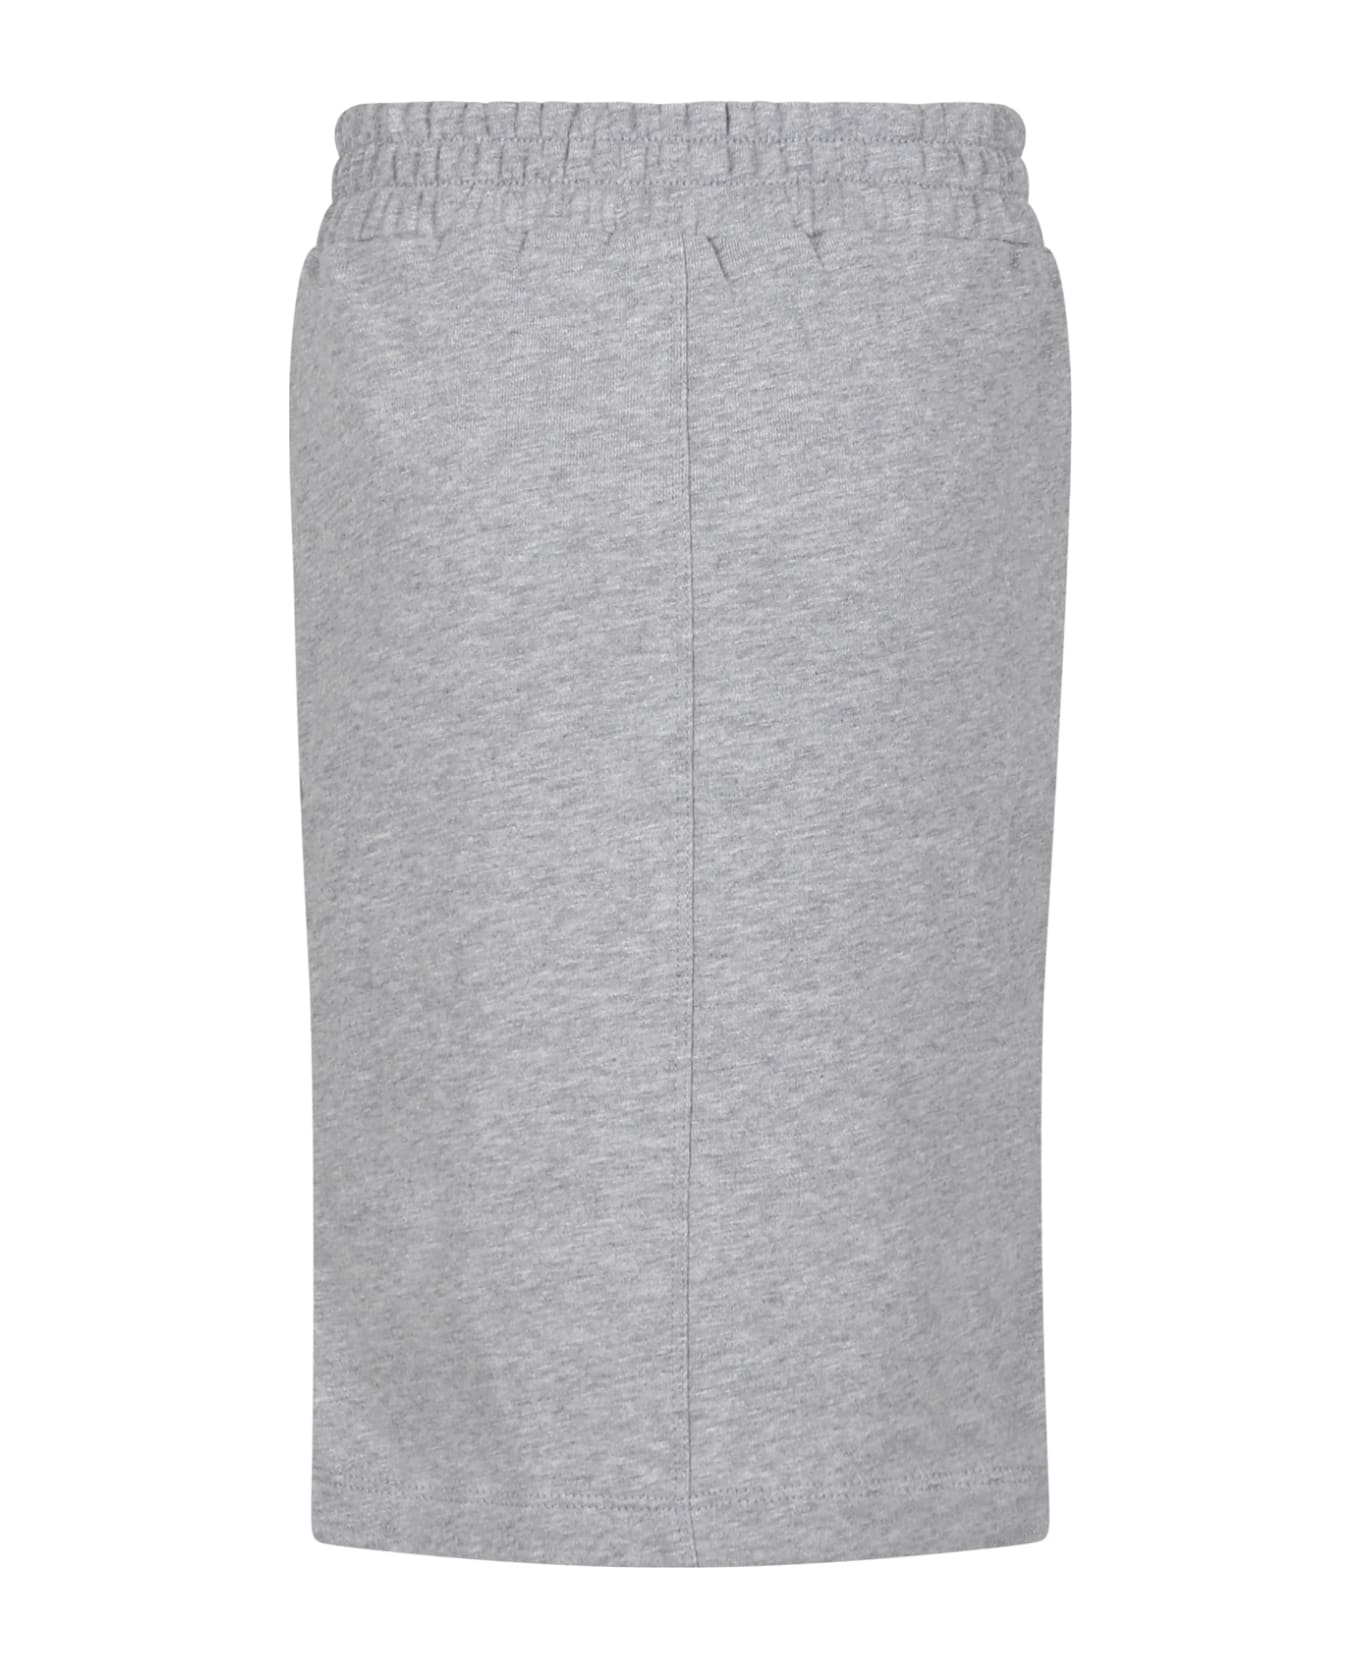 Marni Gray Skirt For Girl With Logo - Grey